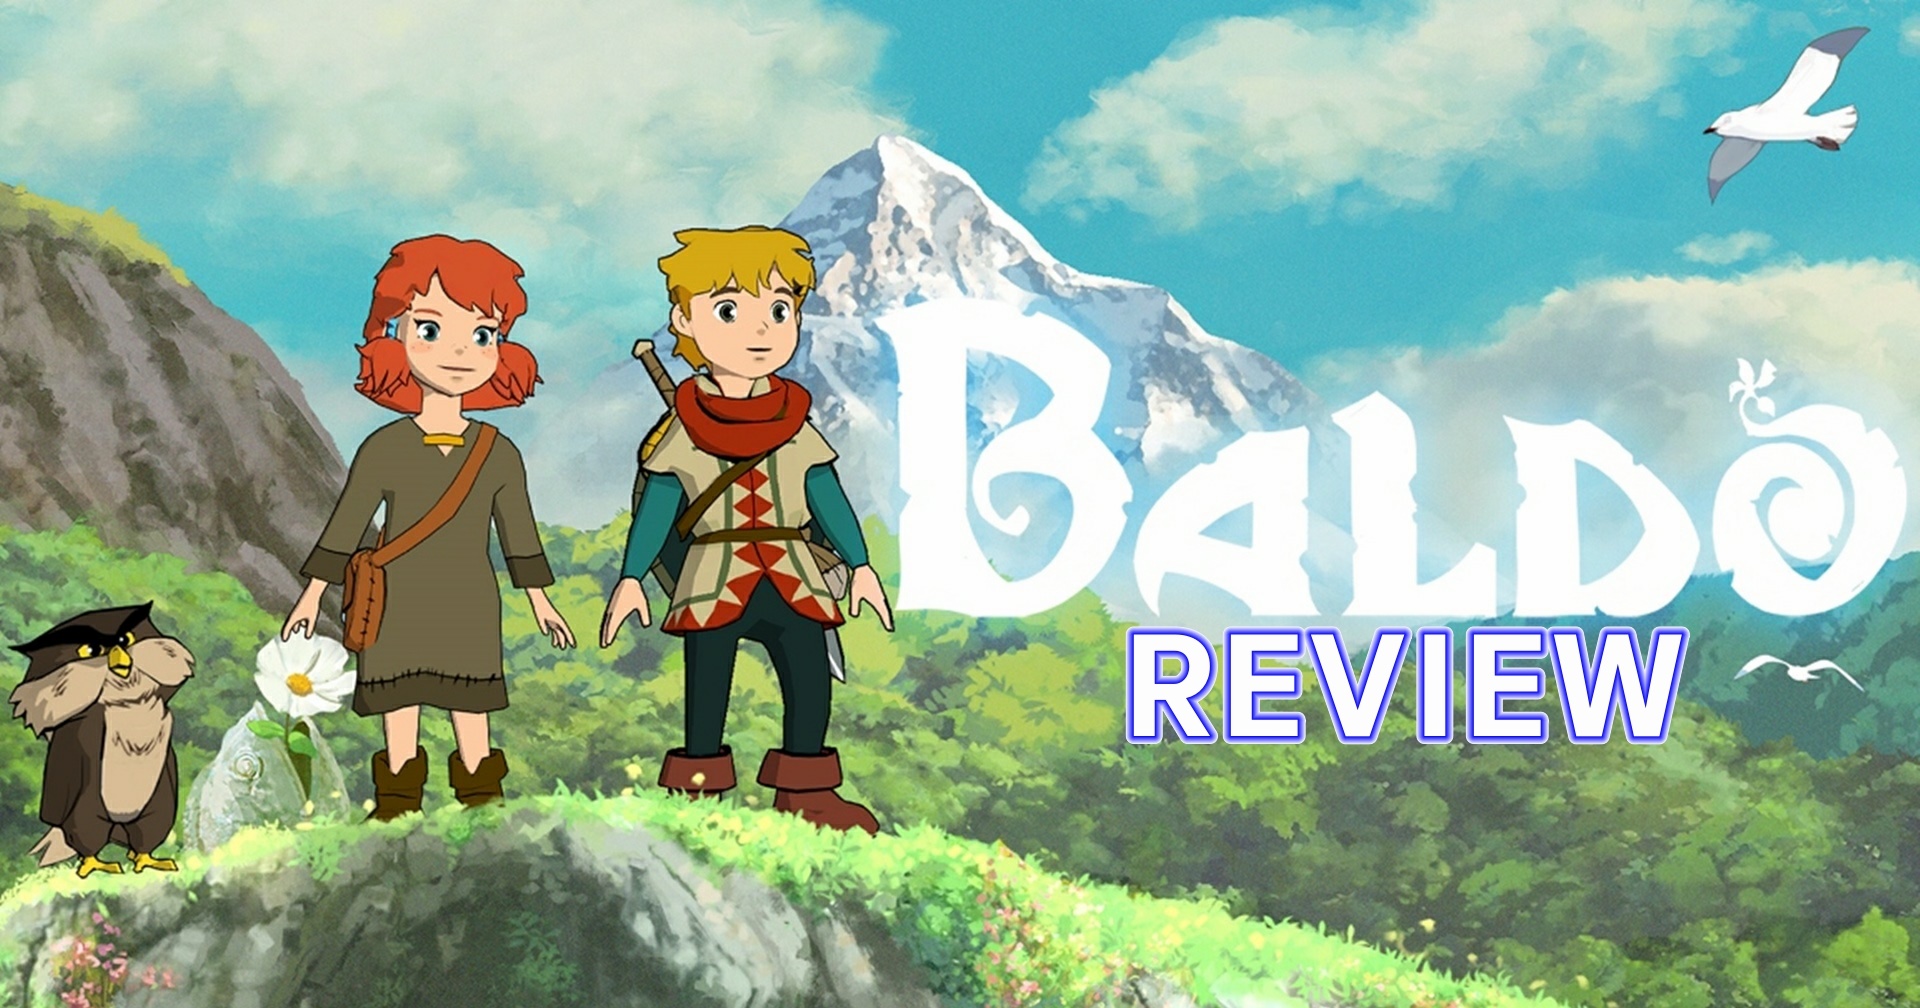 รีวิวเกม Baldo The Guardian Owls เมื่อ Zelda มาร่วมร่างกับการ์ตูน Ghibli